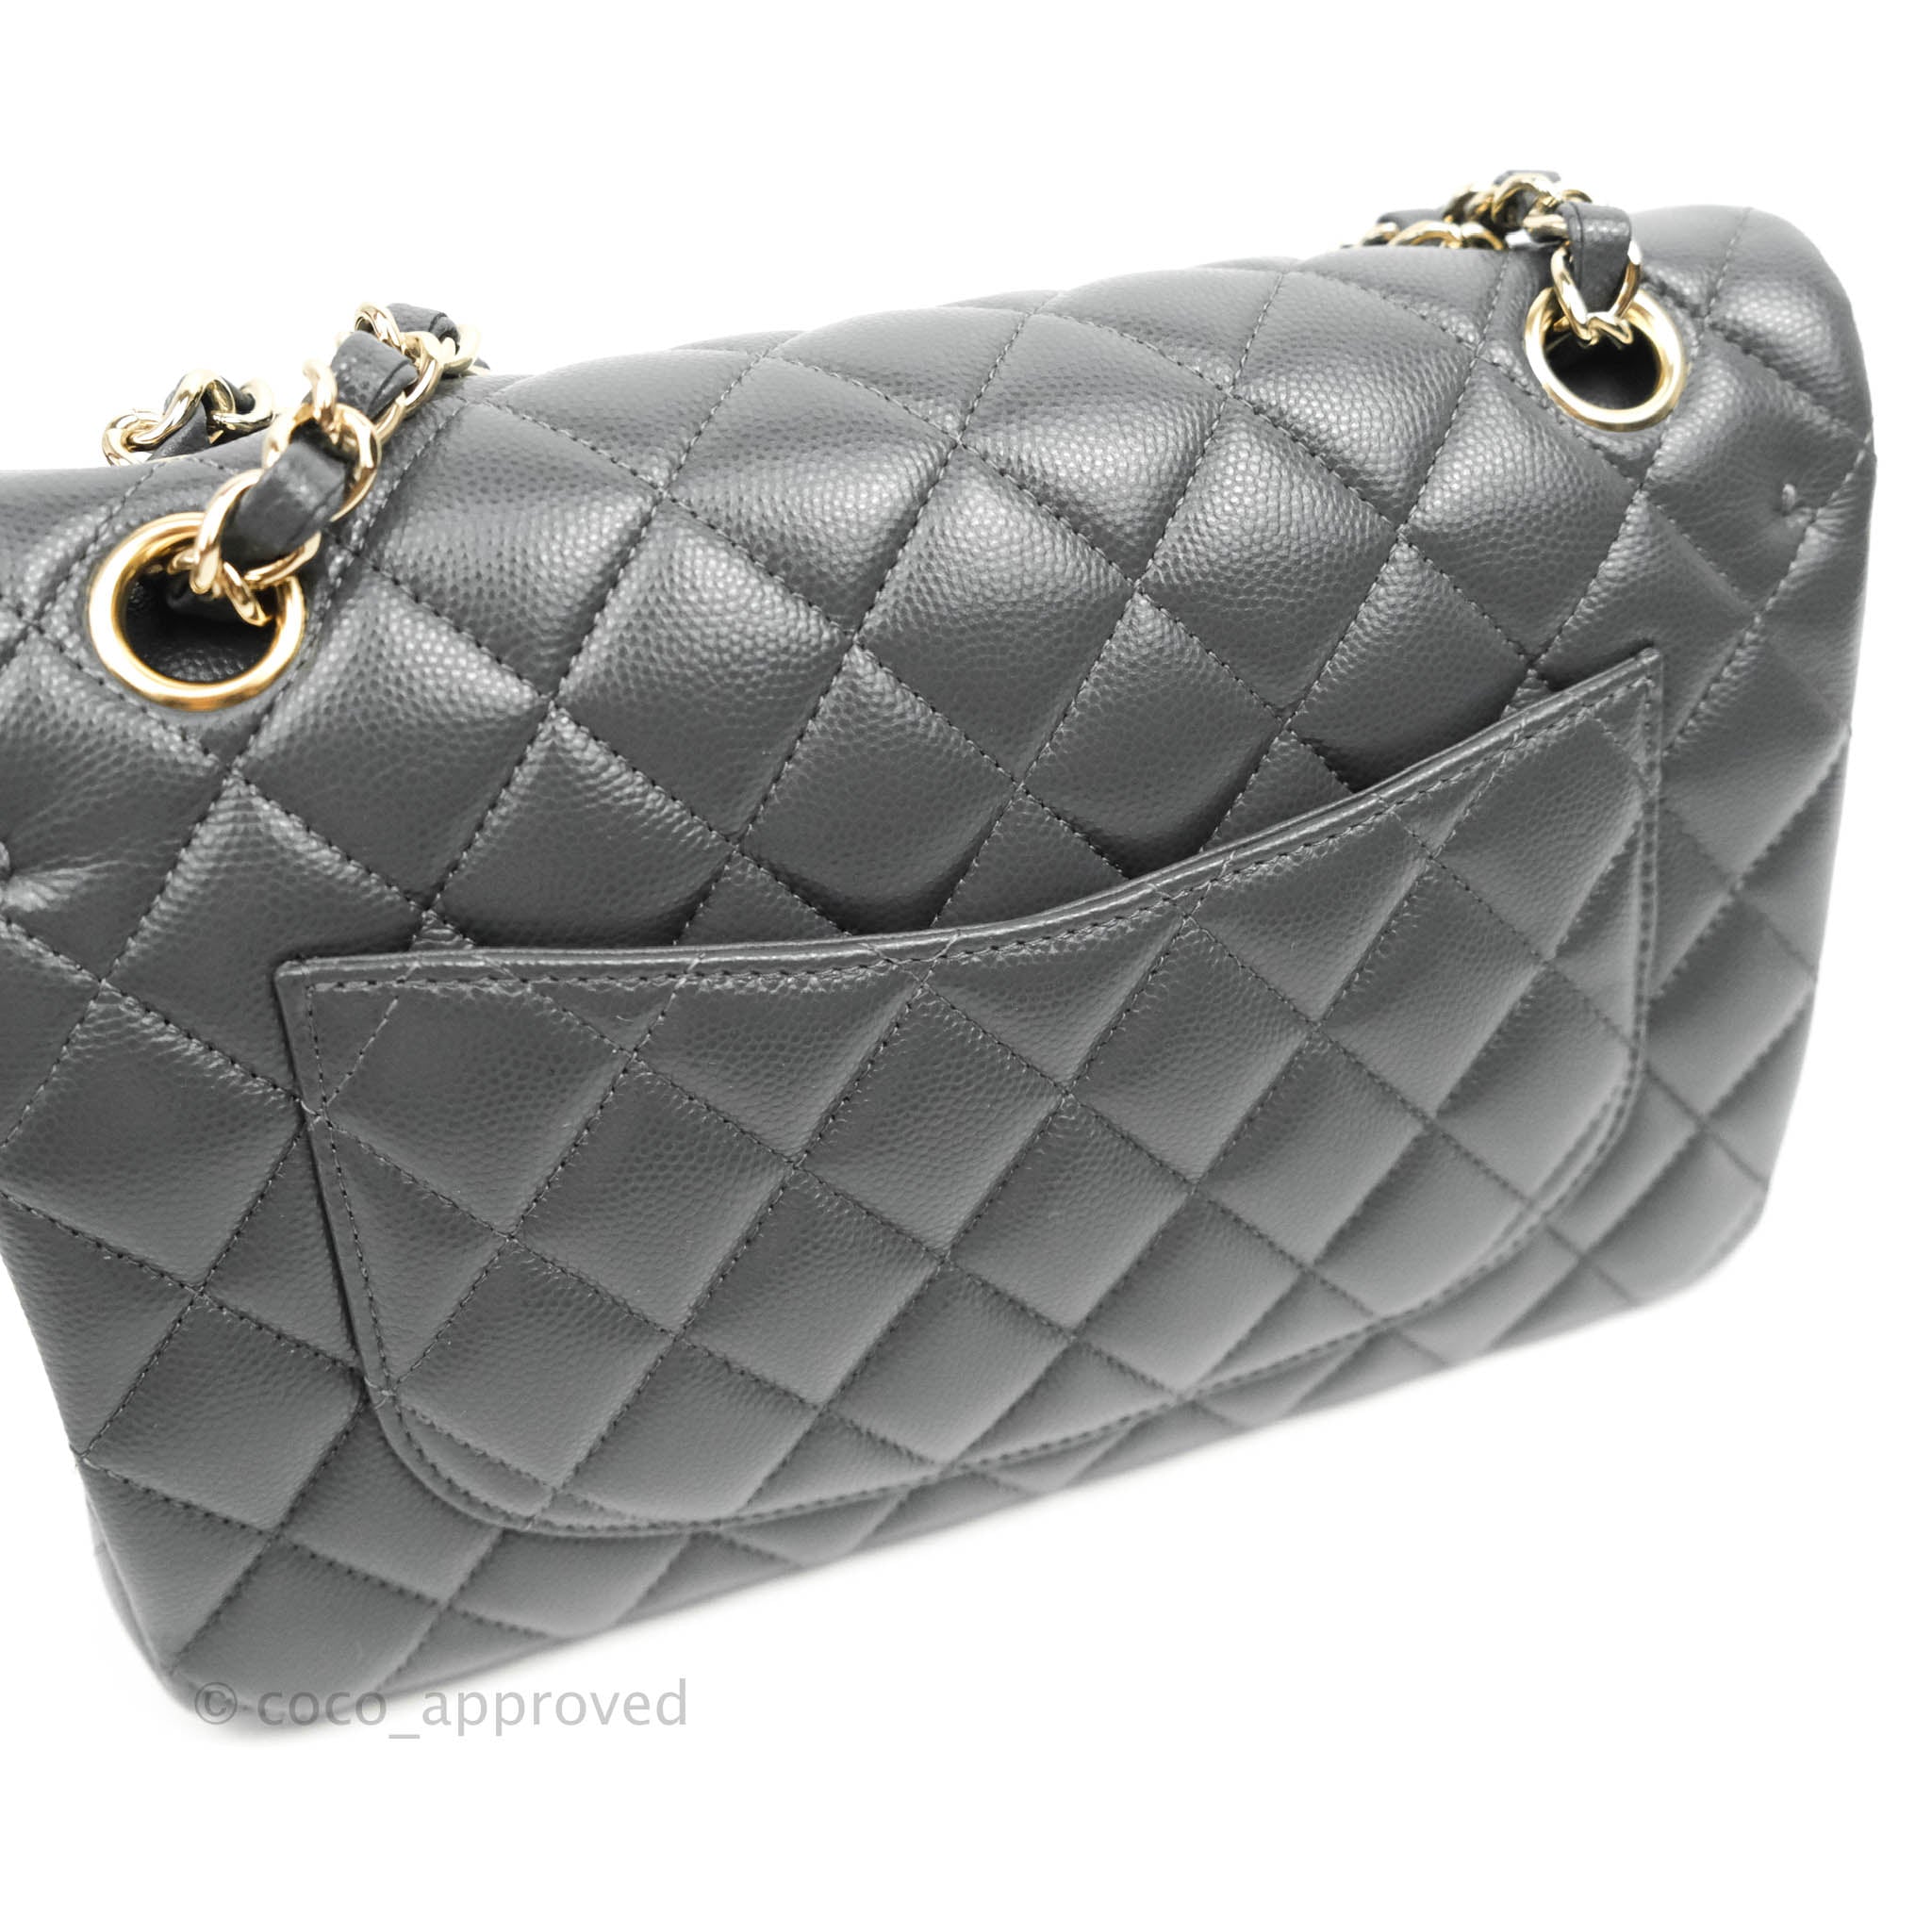 Season Collection ! Chanel 18685887 Dark Grey Caviar Chunky Chain Flap Bag  in Brass Gold Hardware